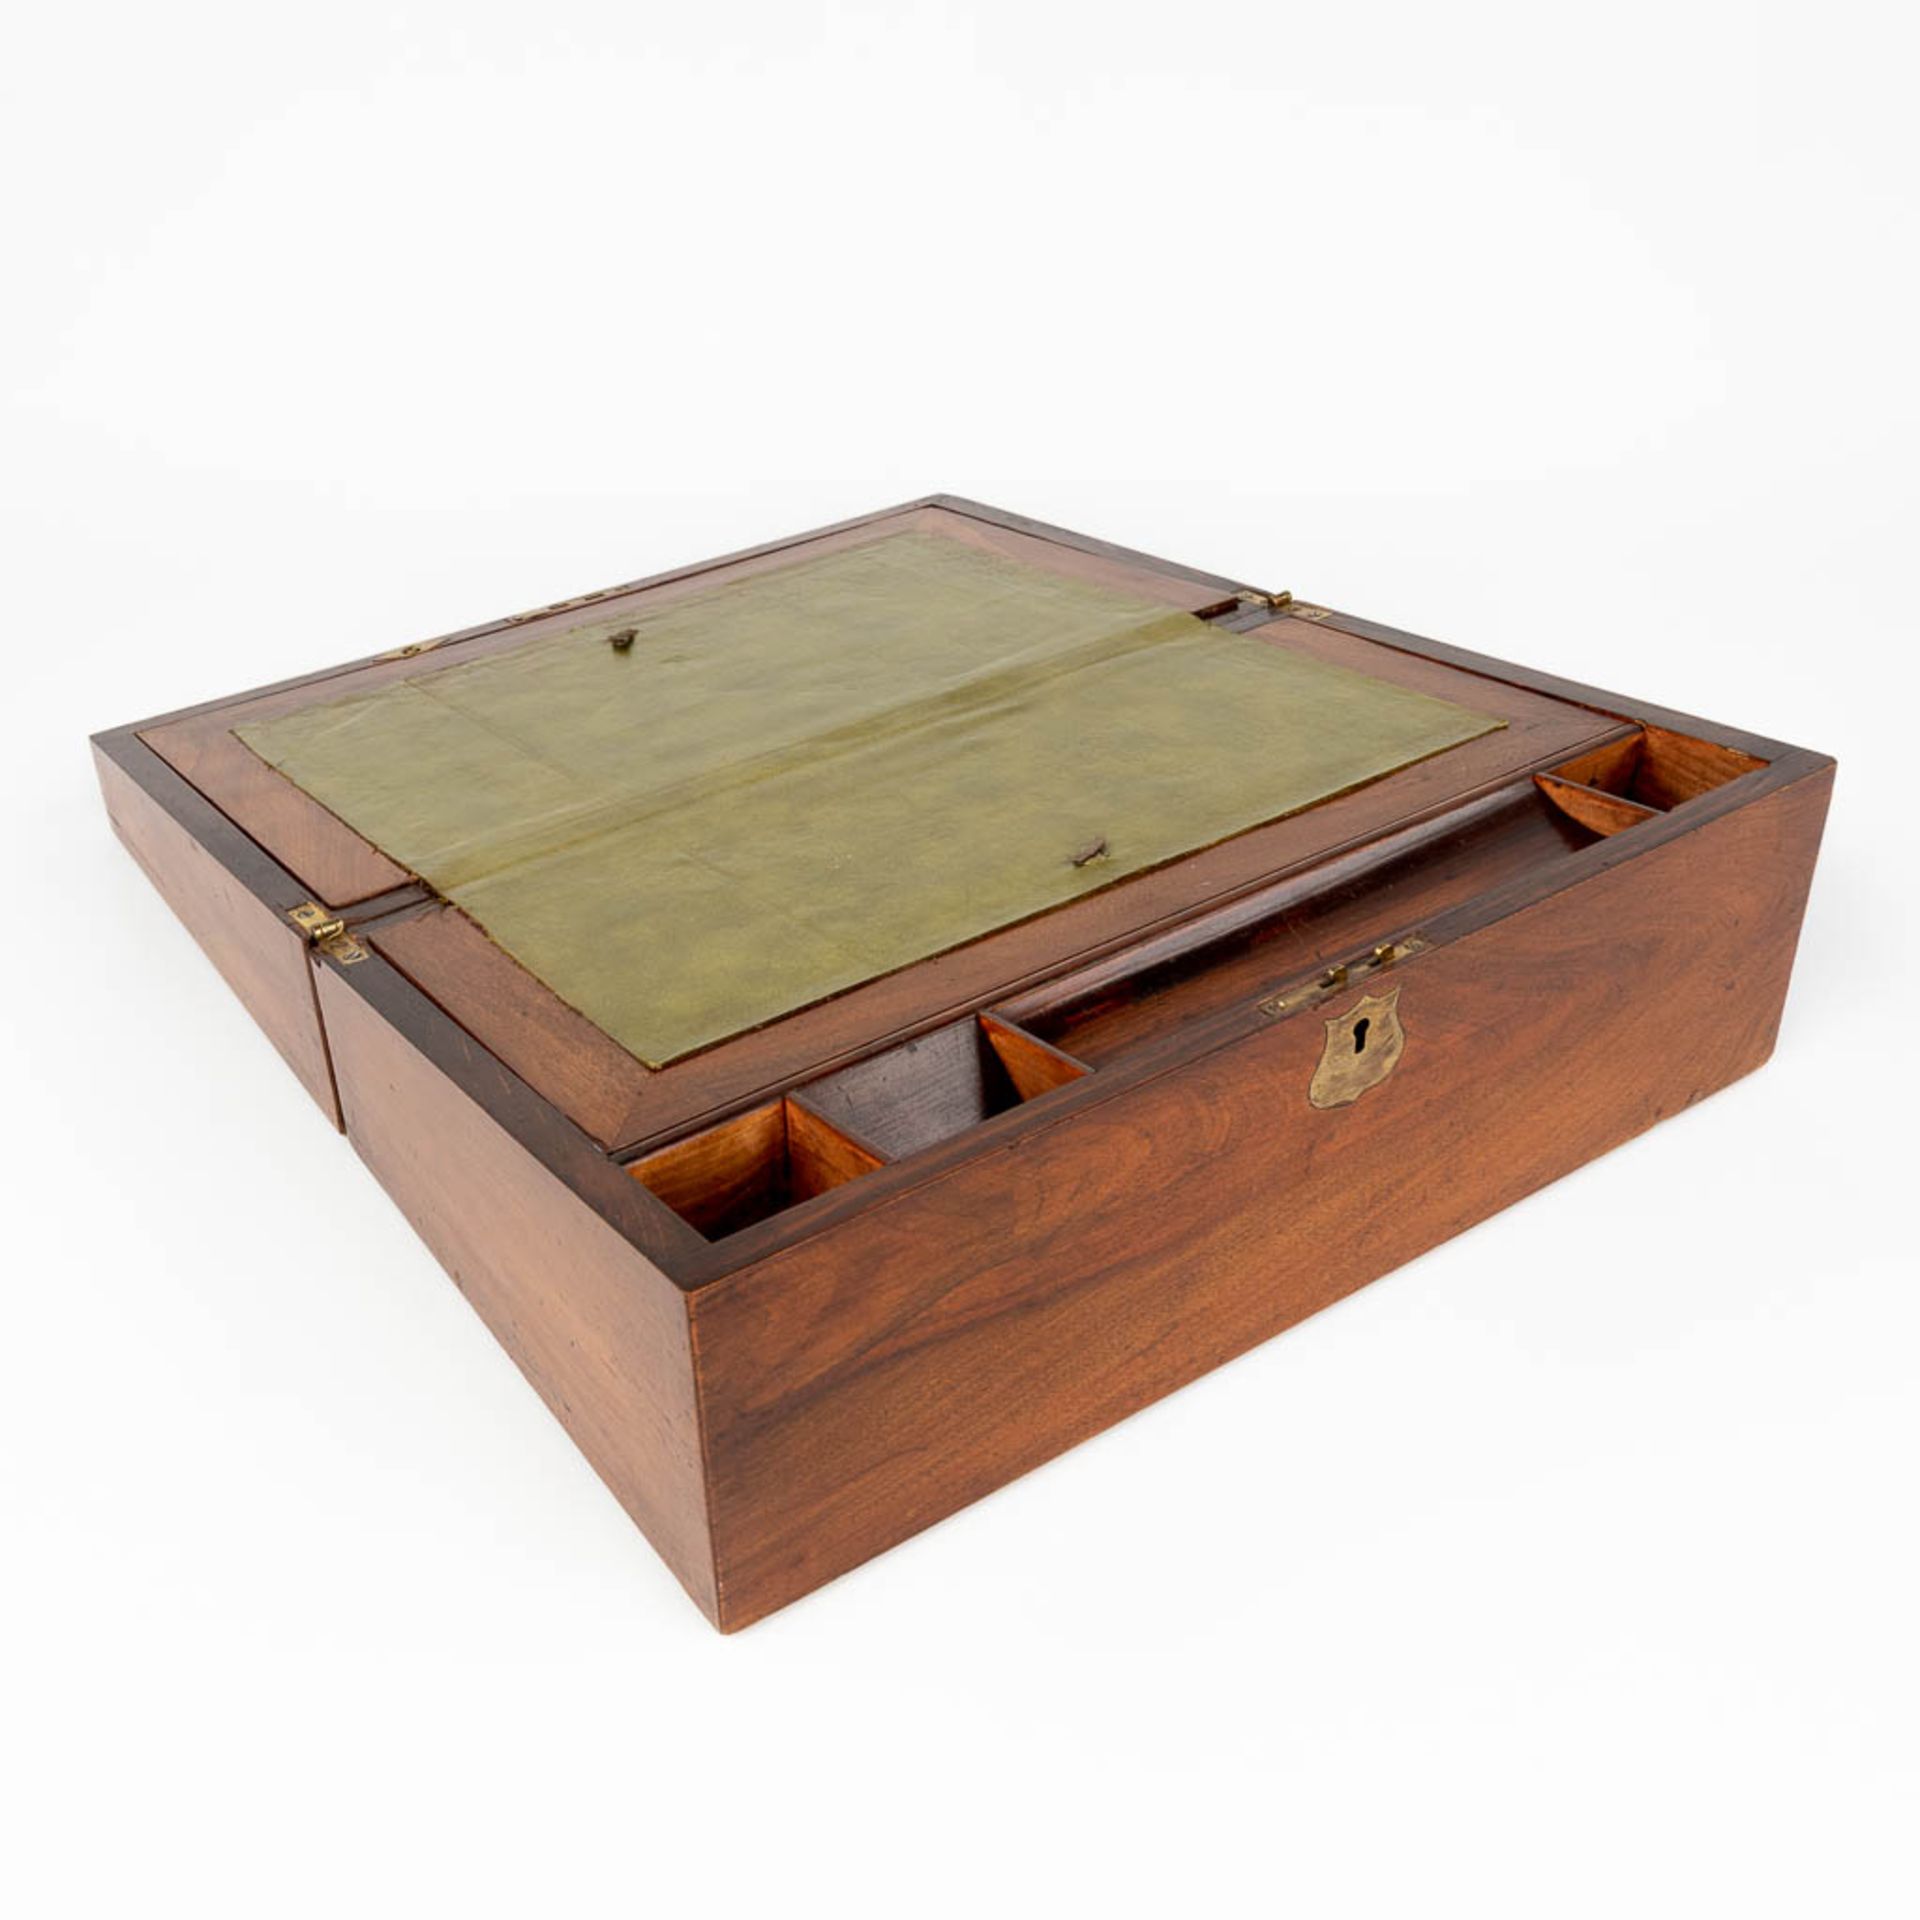 An antique slope desk. England, 19th C. (L:24 x W:40 x H:16 cm)